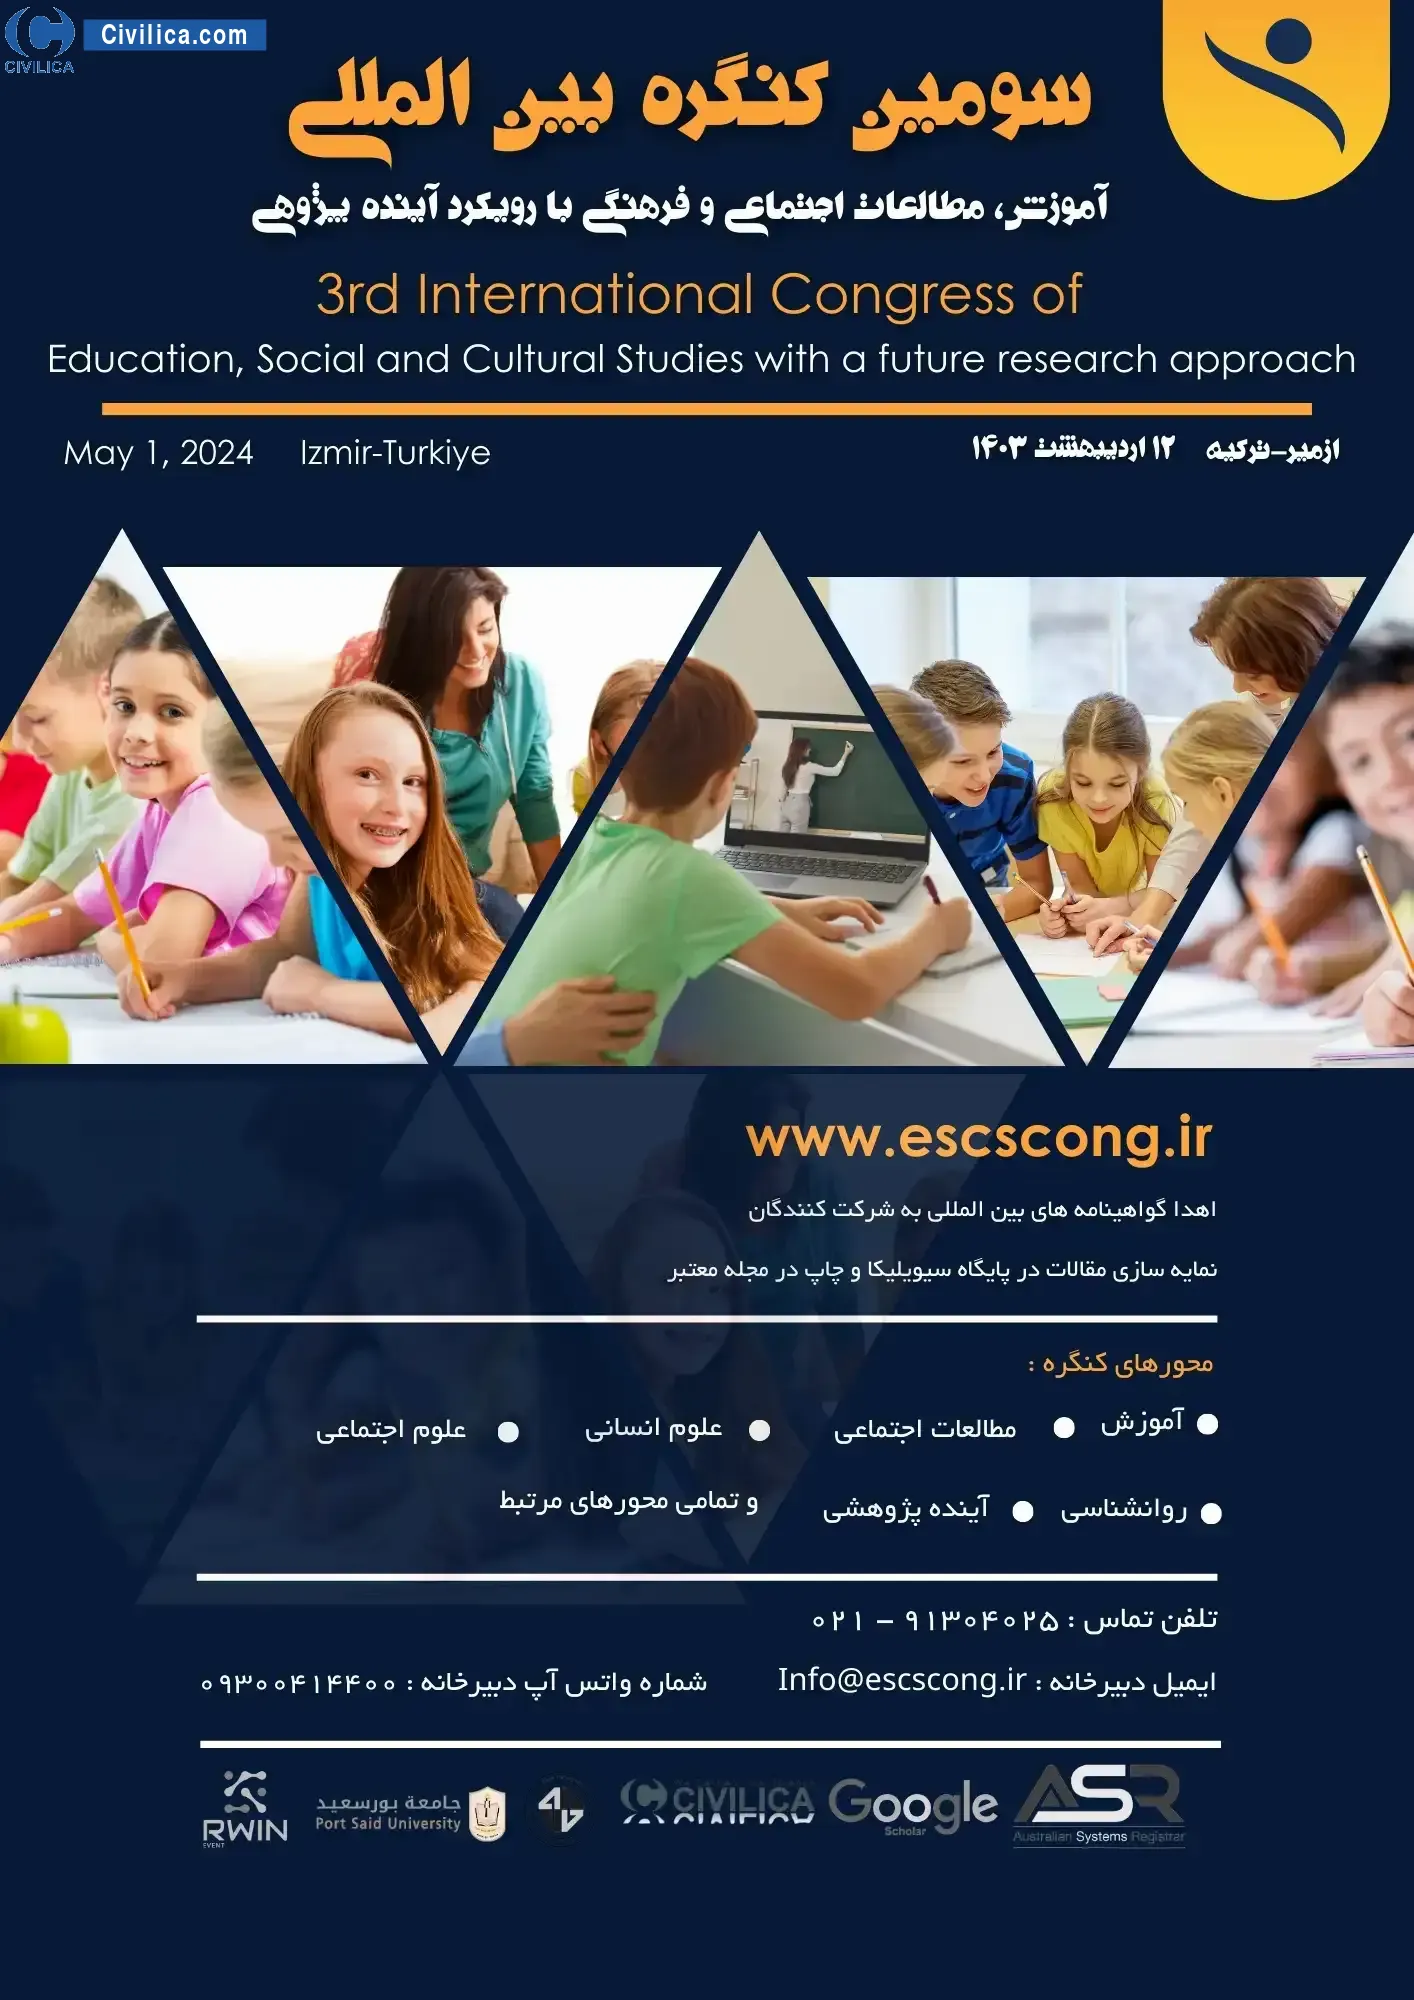 فراخوان مقاله سومین کنگره بین المللی آموزش، مطالعات اجتماعی و فرهنگی با رویکرد آینده پژوهی